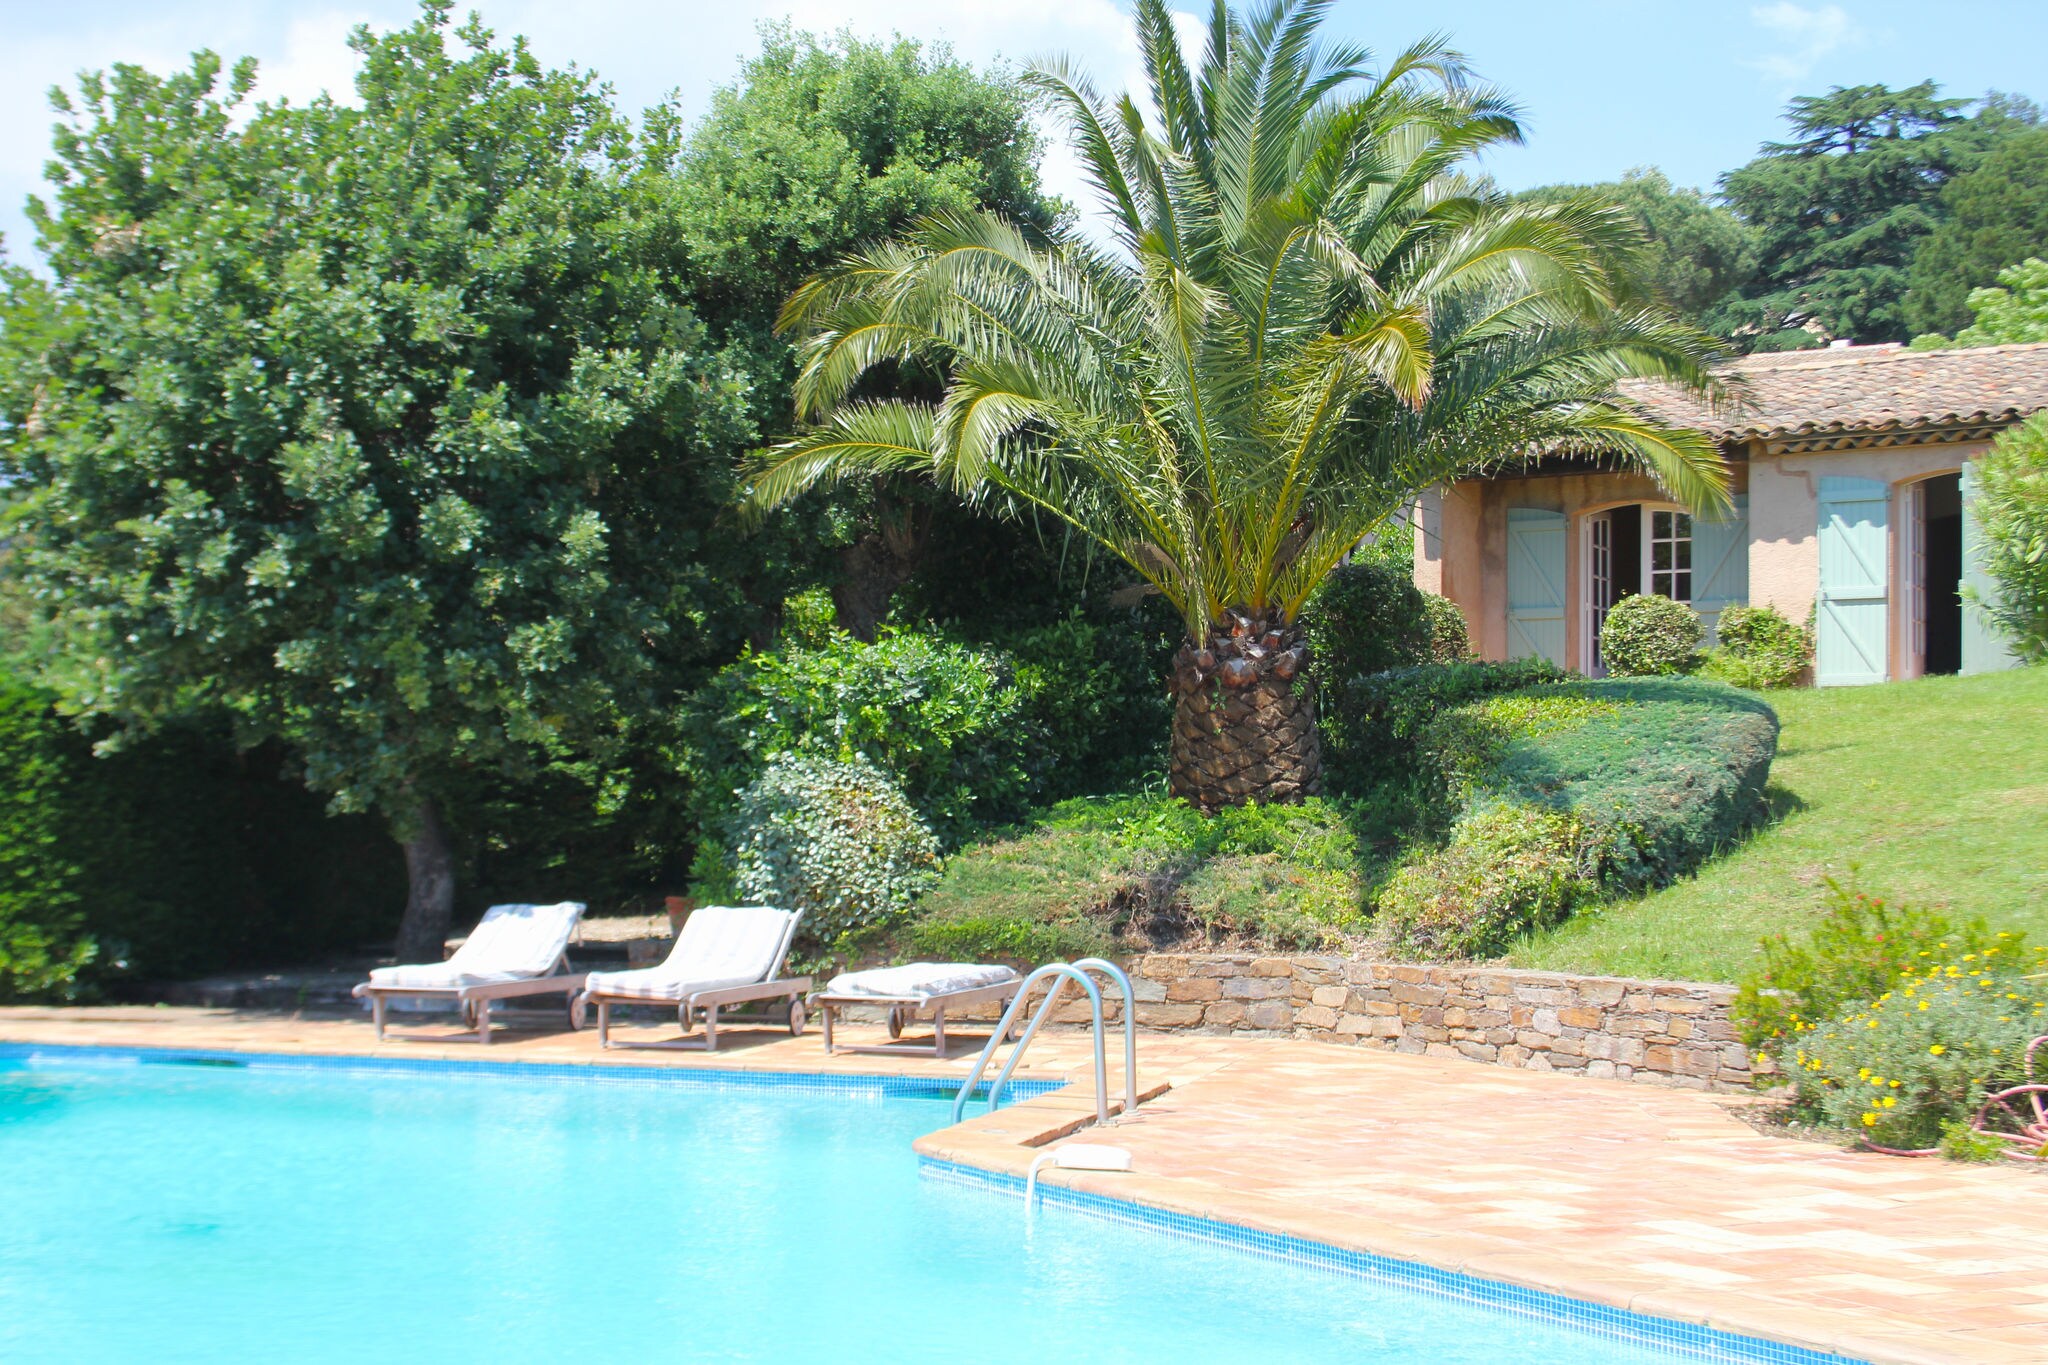 Vrijstaande vakantievilla in Zuid-Frankrijk met privézwembad